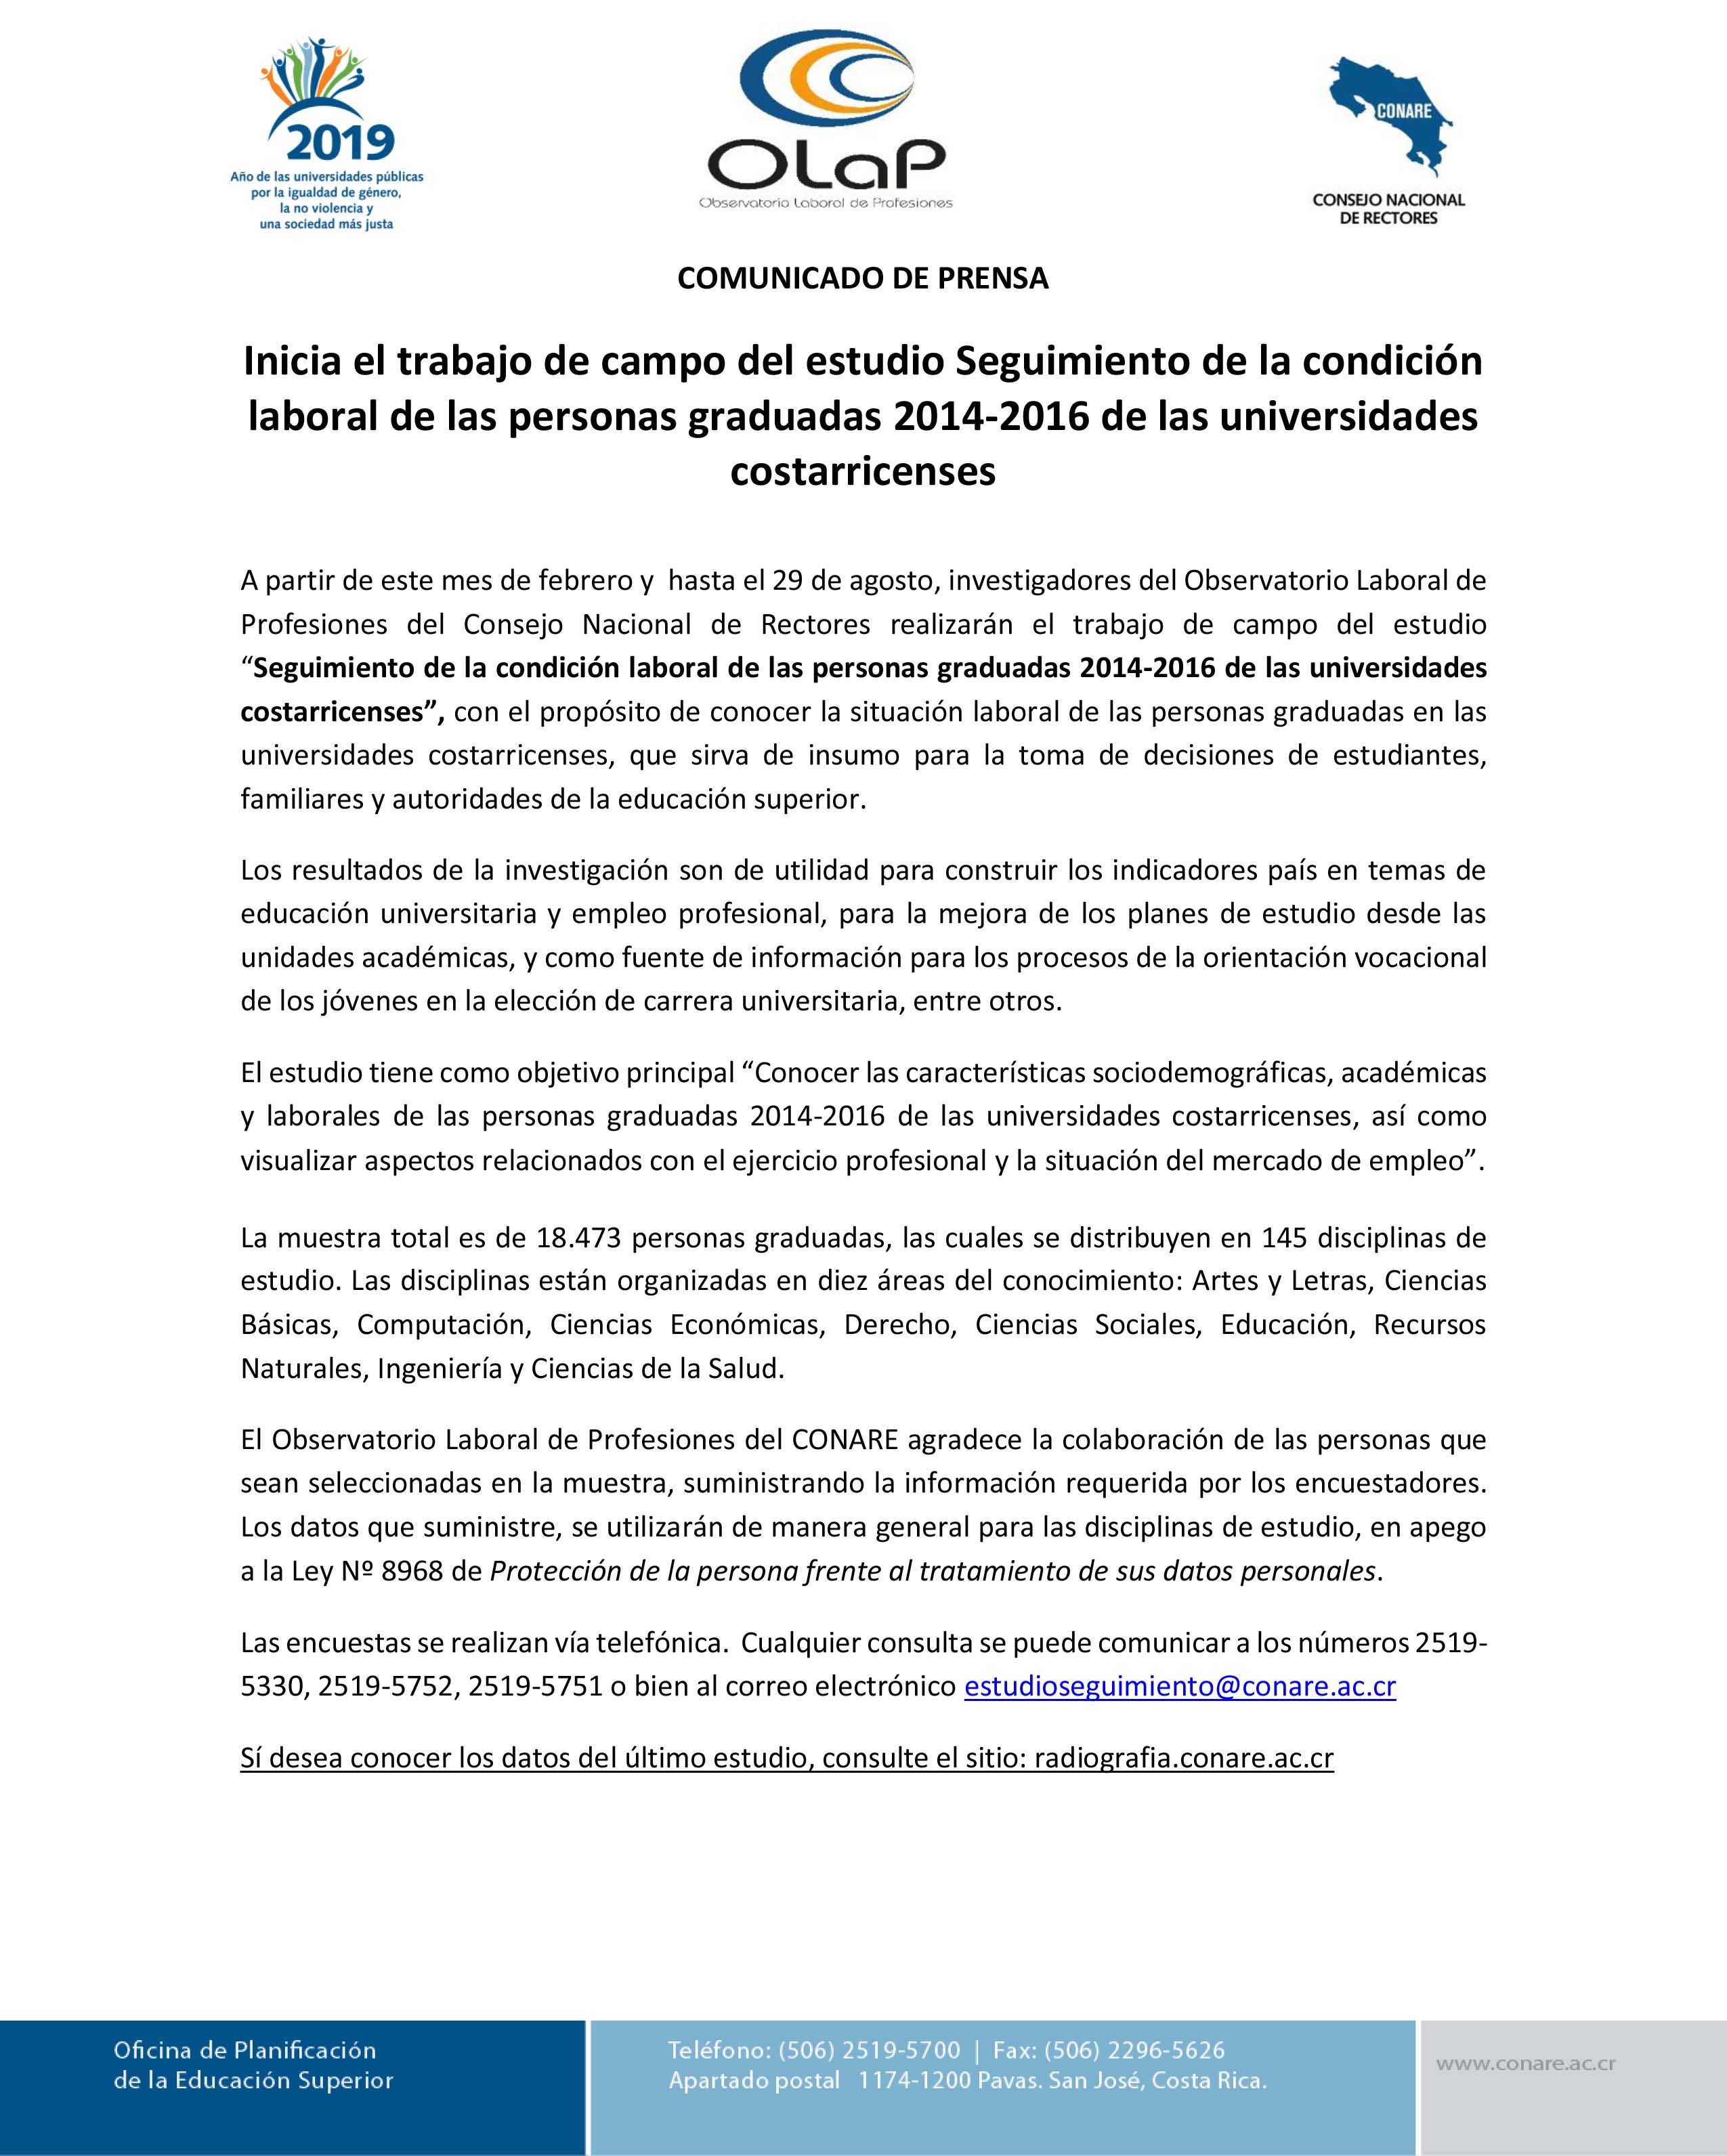 Inicia el trabajo de campo del estudio Seguimiento de la condición laboral de las personas graduadas 2014 2016 de las universidades costarricenses